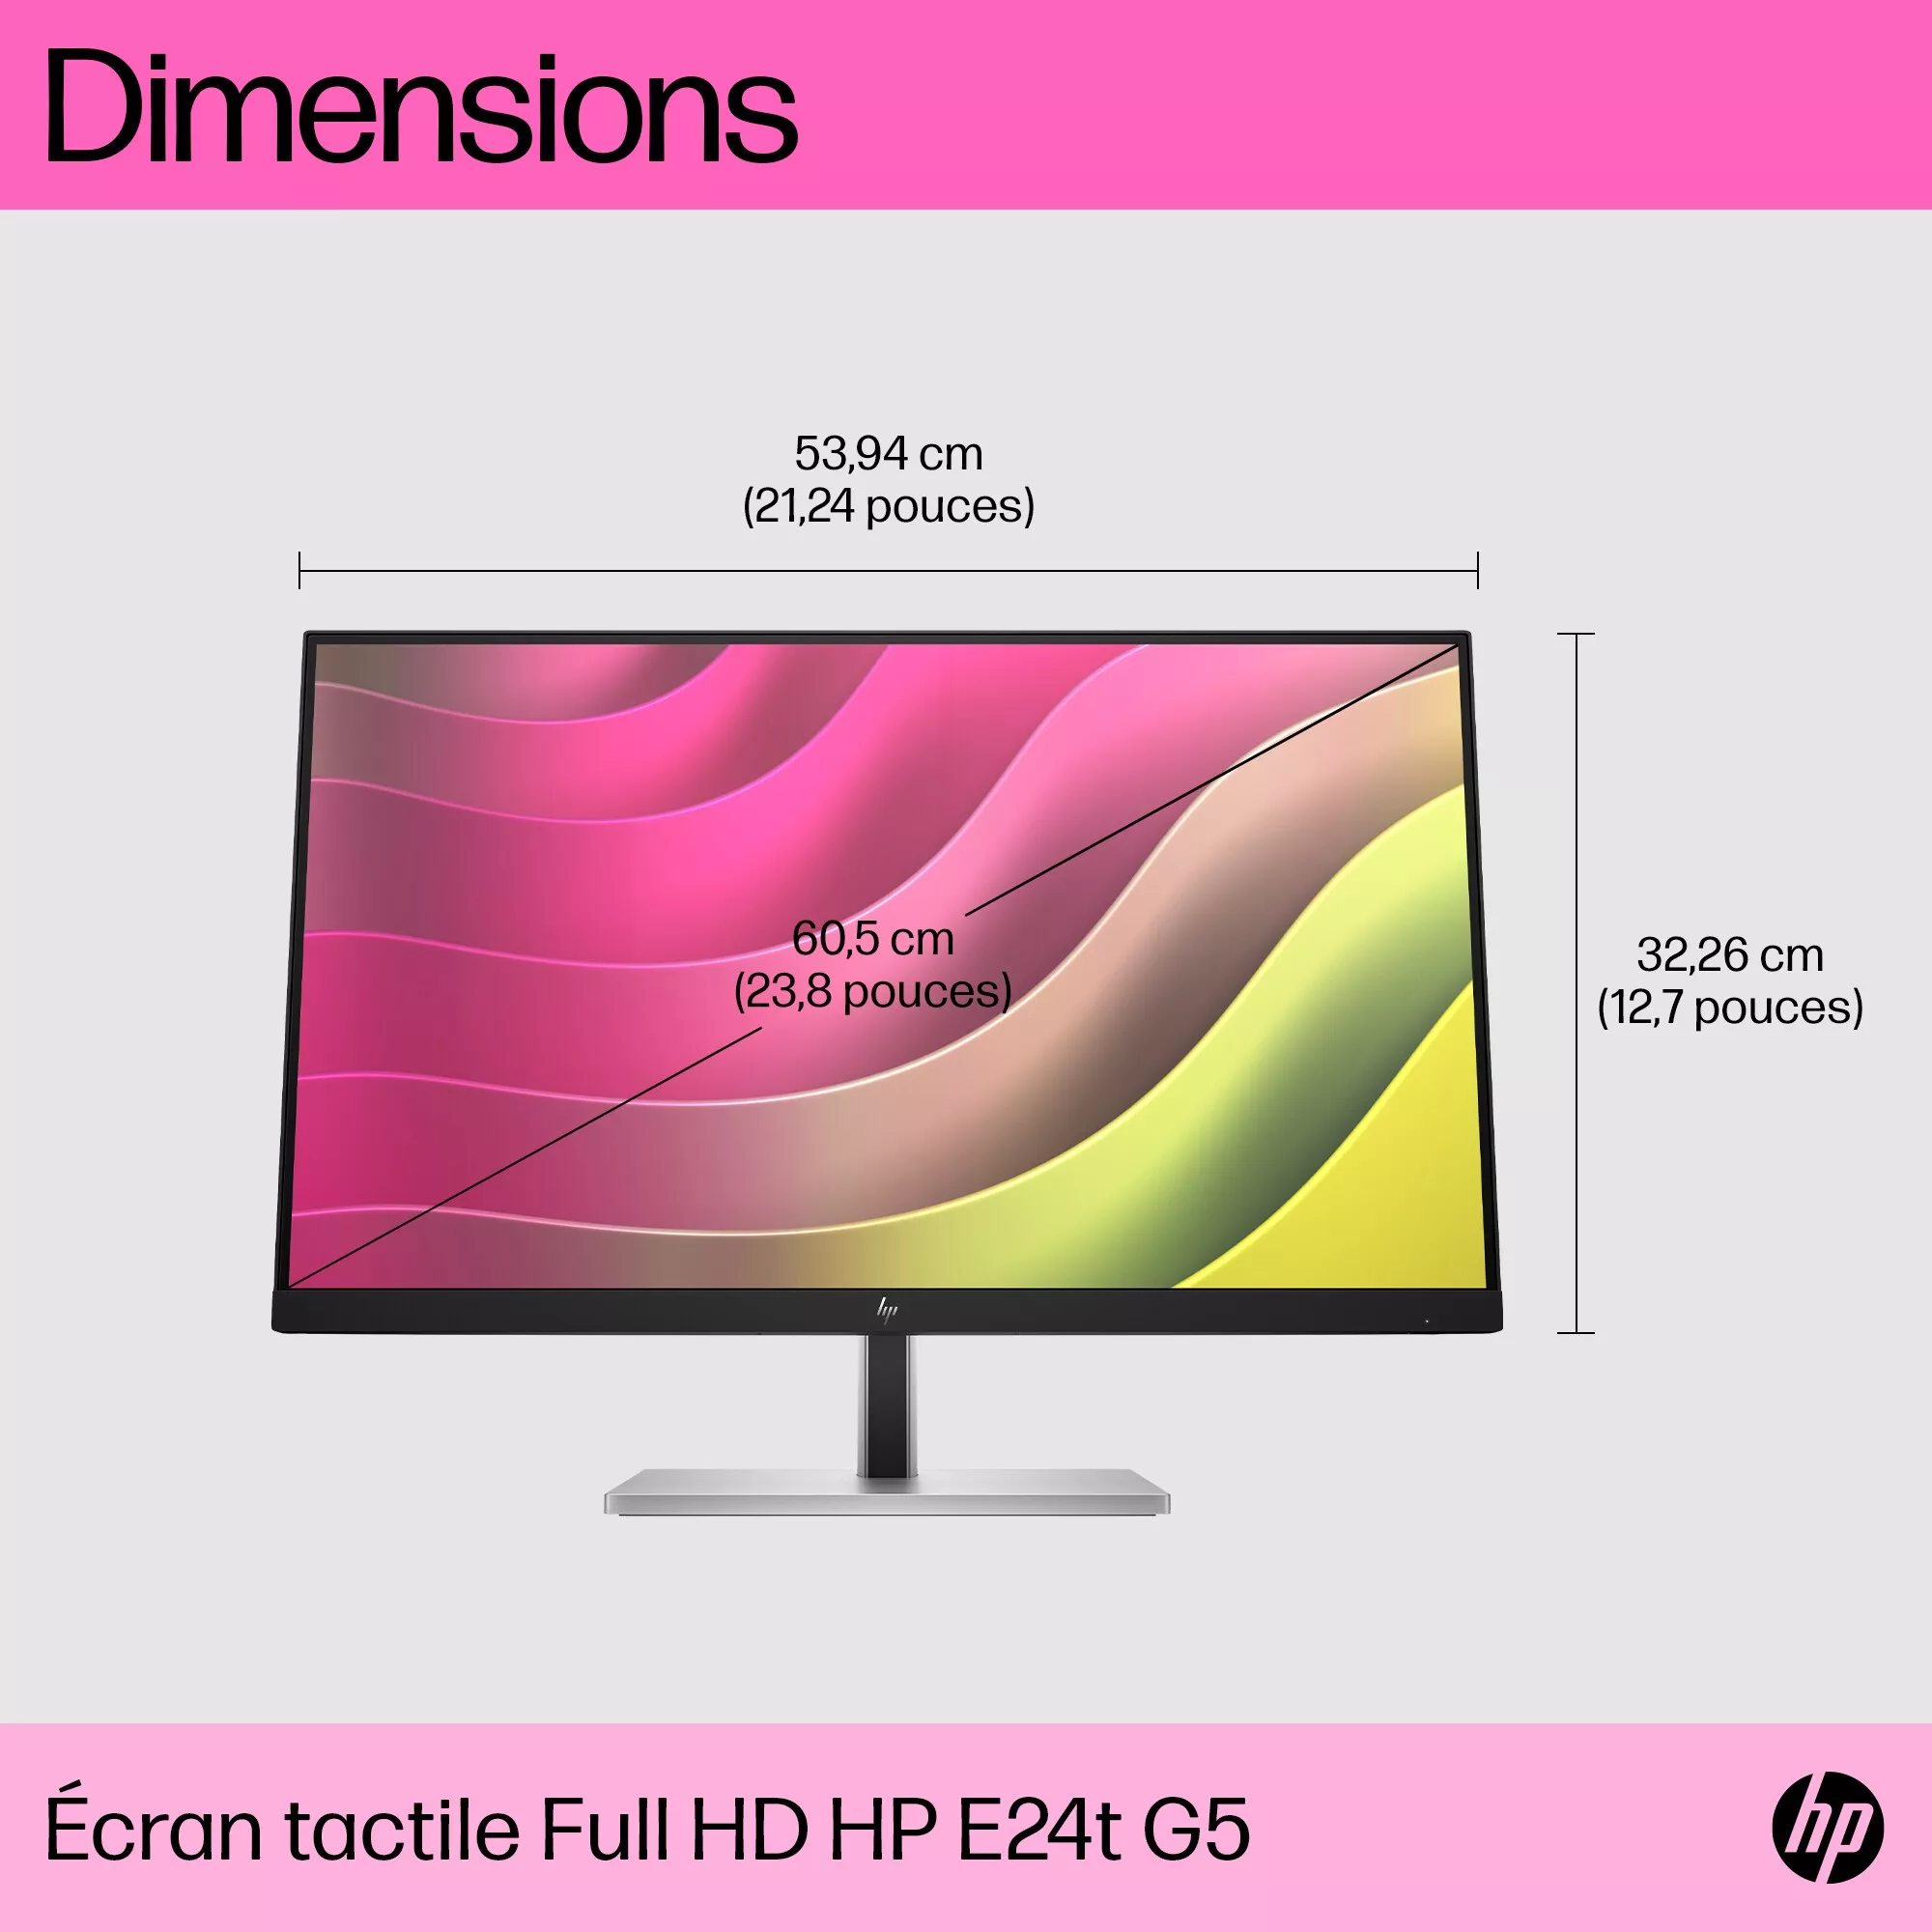 HP E24t G5 23.8p Touch FHD Monitor 1920x1080 HP - visuel 1 - hello RSE - Meilleure efficacité énergétique